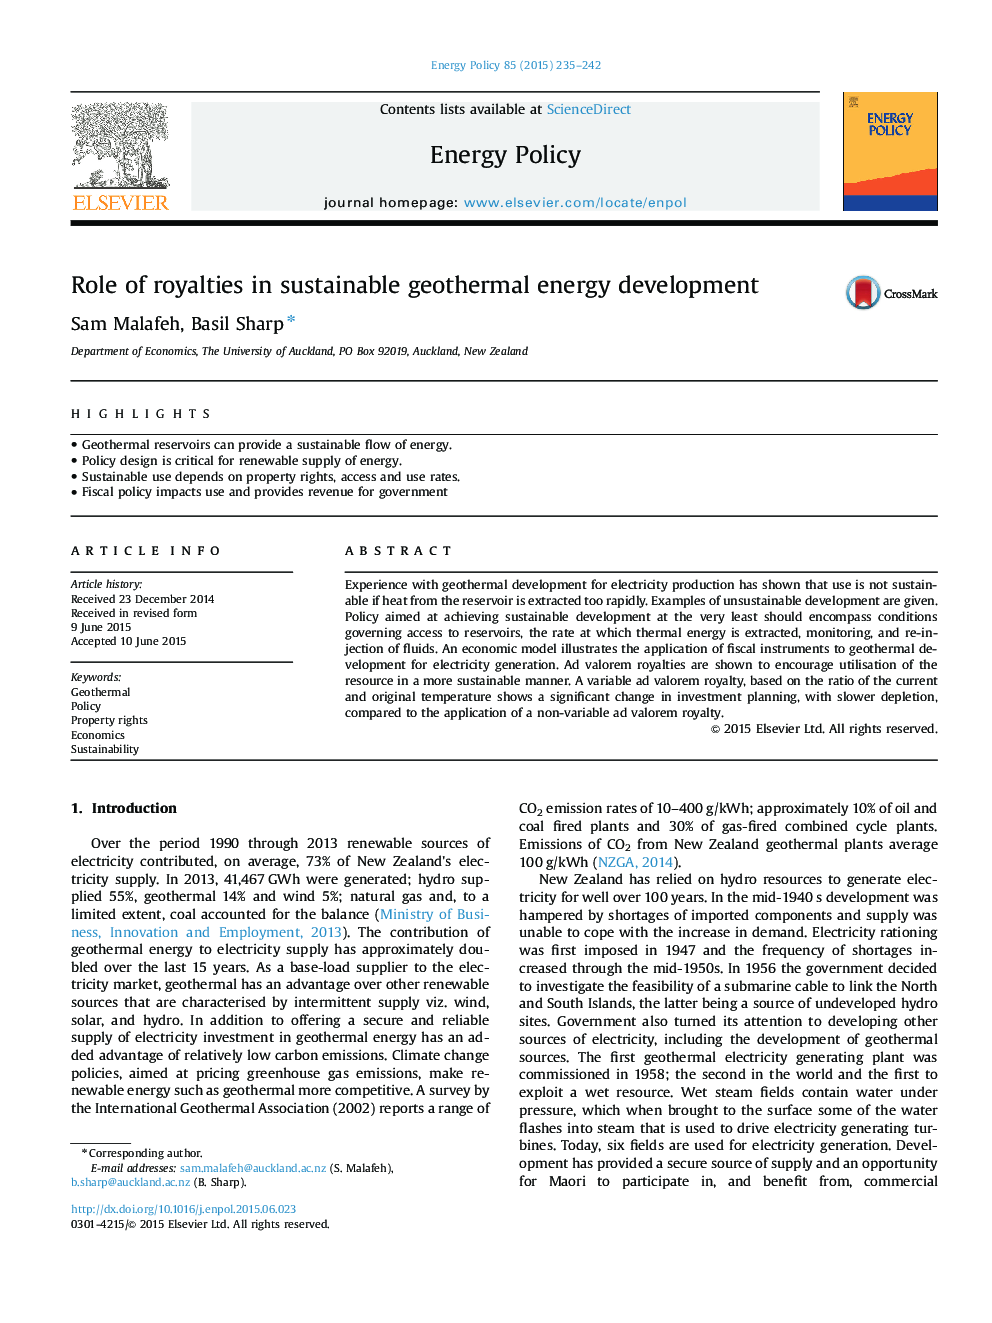 نقش حق امتیاز در توسعه انرژی پایدار زمین گرمایی 